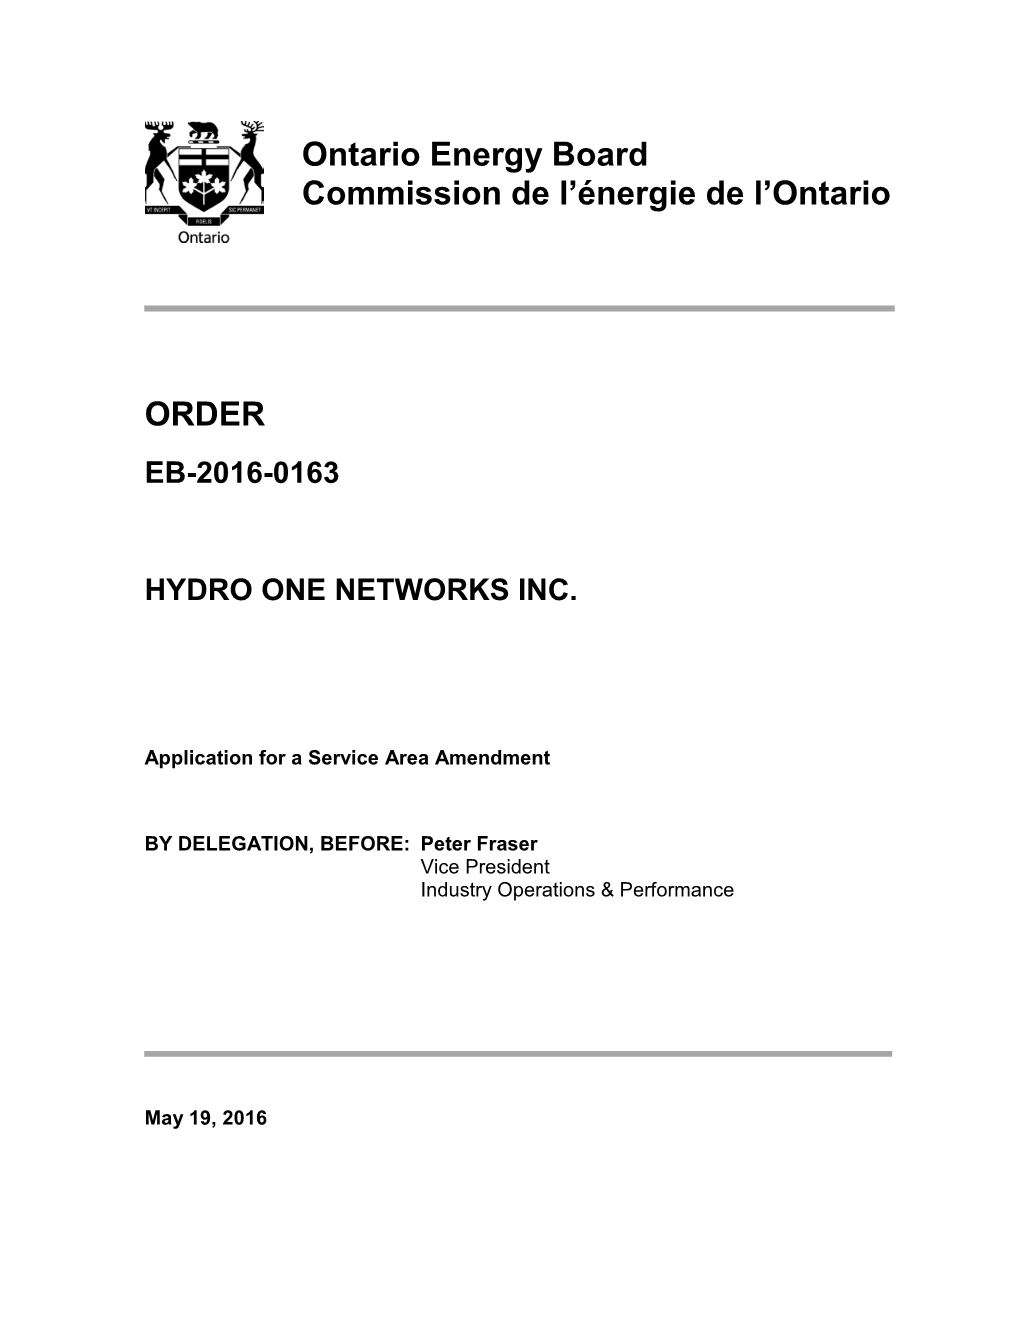 ORDER Ontario Energy Board Commission De L'énergie De L'ontario